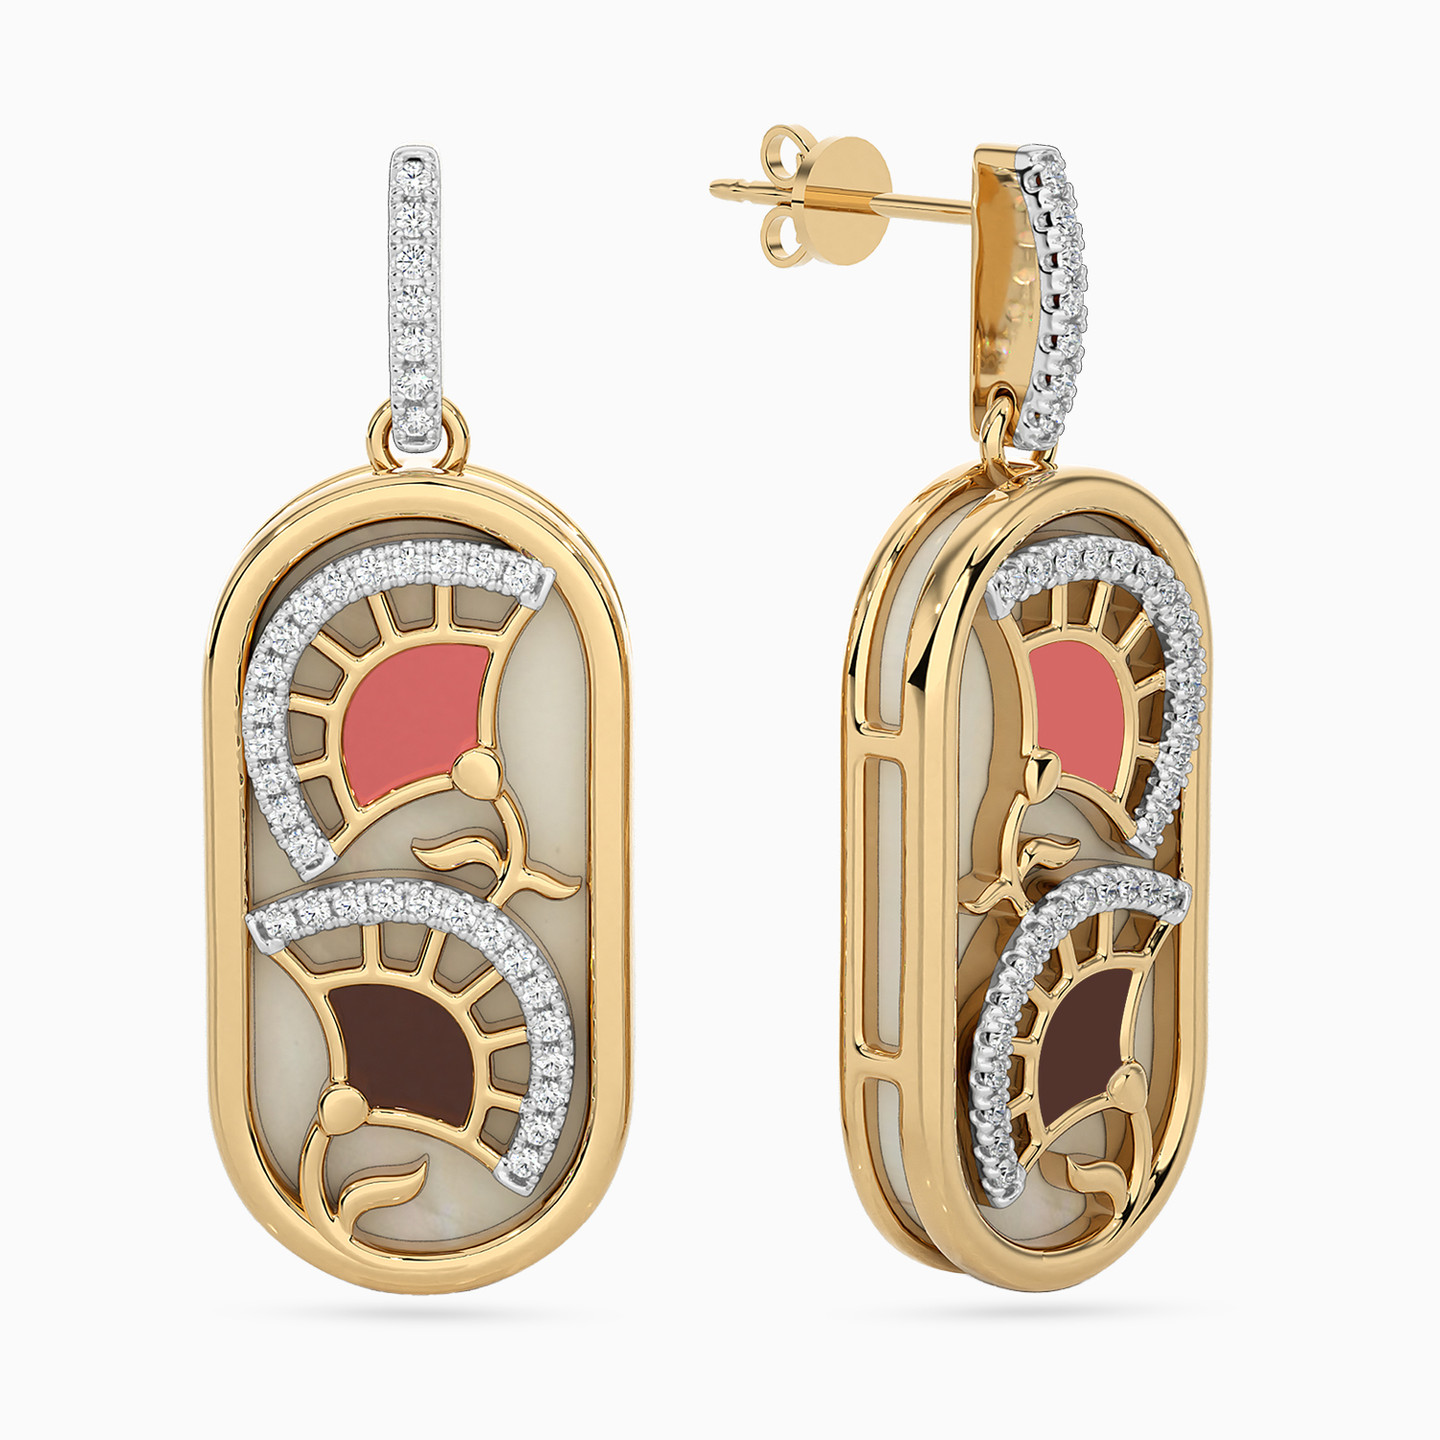 Oval Shaped Diamond & Enamel Coated Drop Earrings in 18K Gold - 2